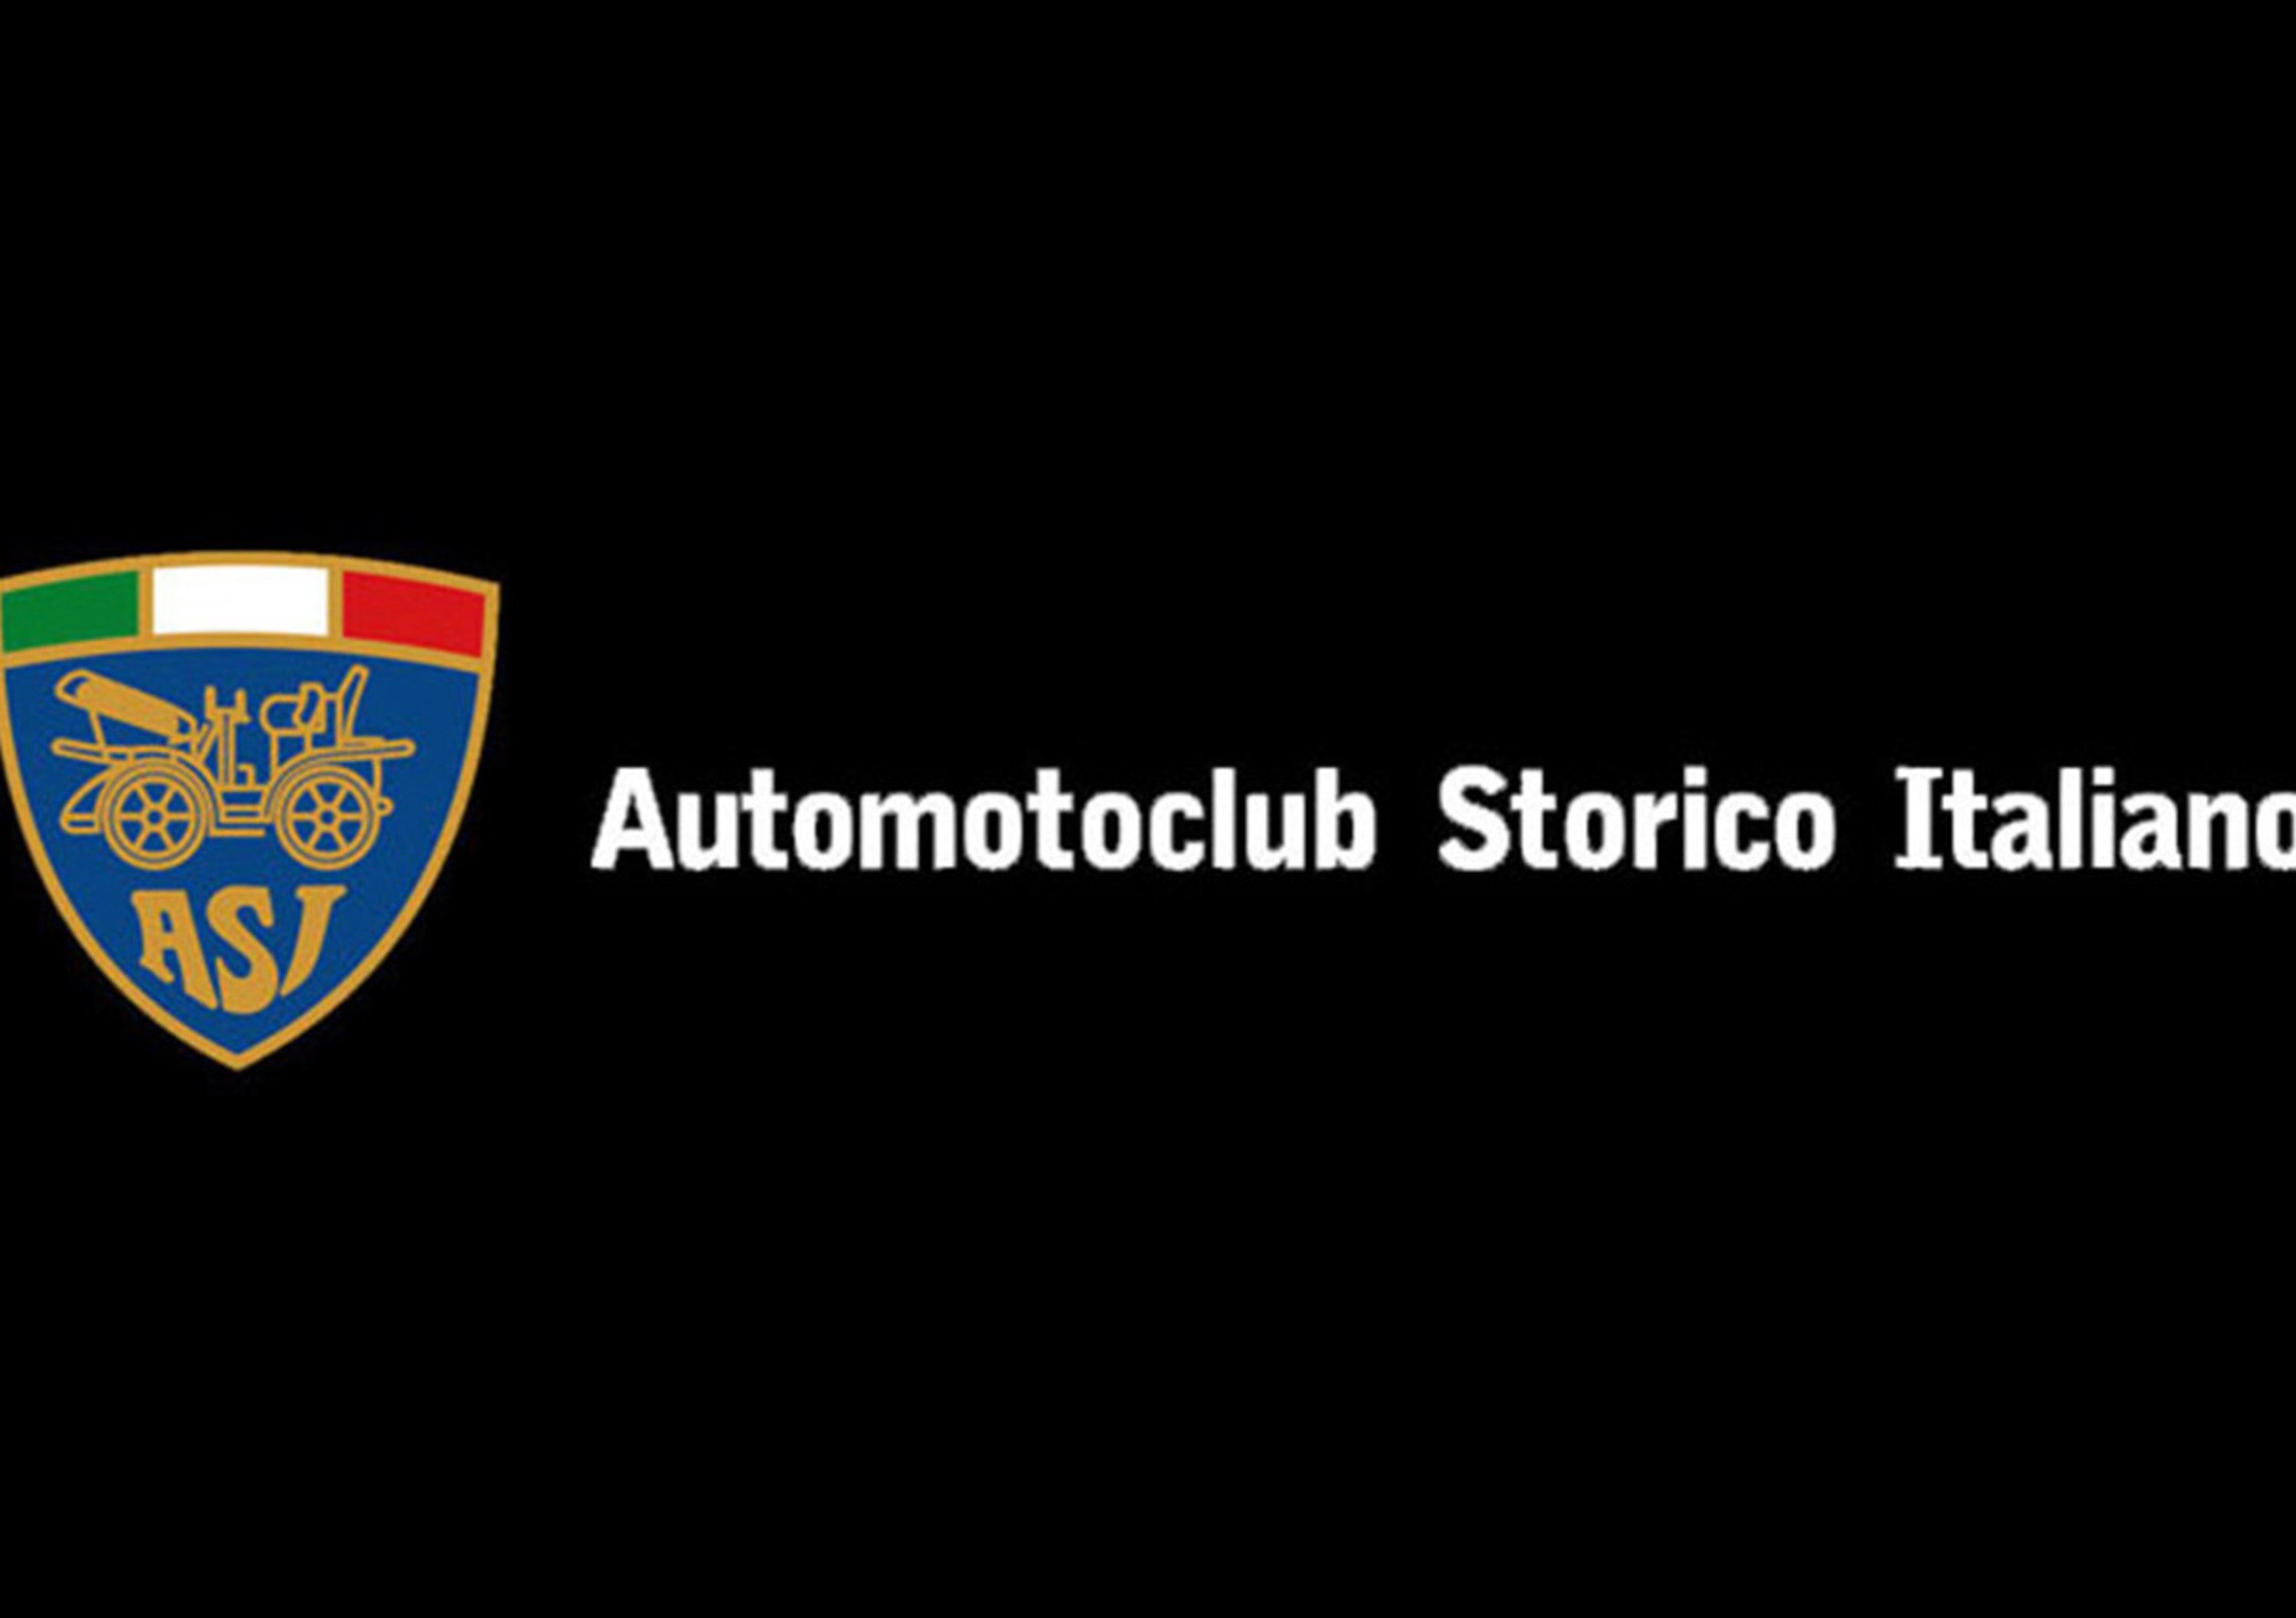 L&rsquo;agenzia torinese Spin-To acquisisce l&rsquo;ufficio stampa di ASI (Automotoclub Storico Italiano)